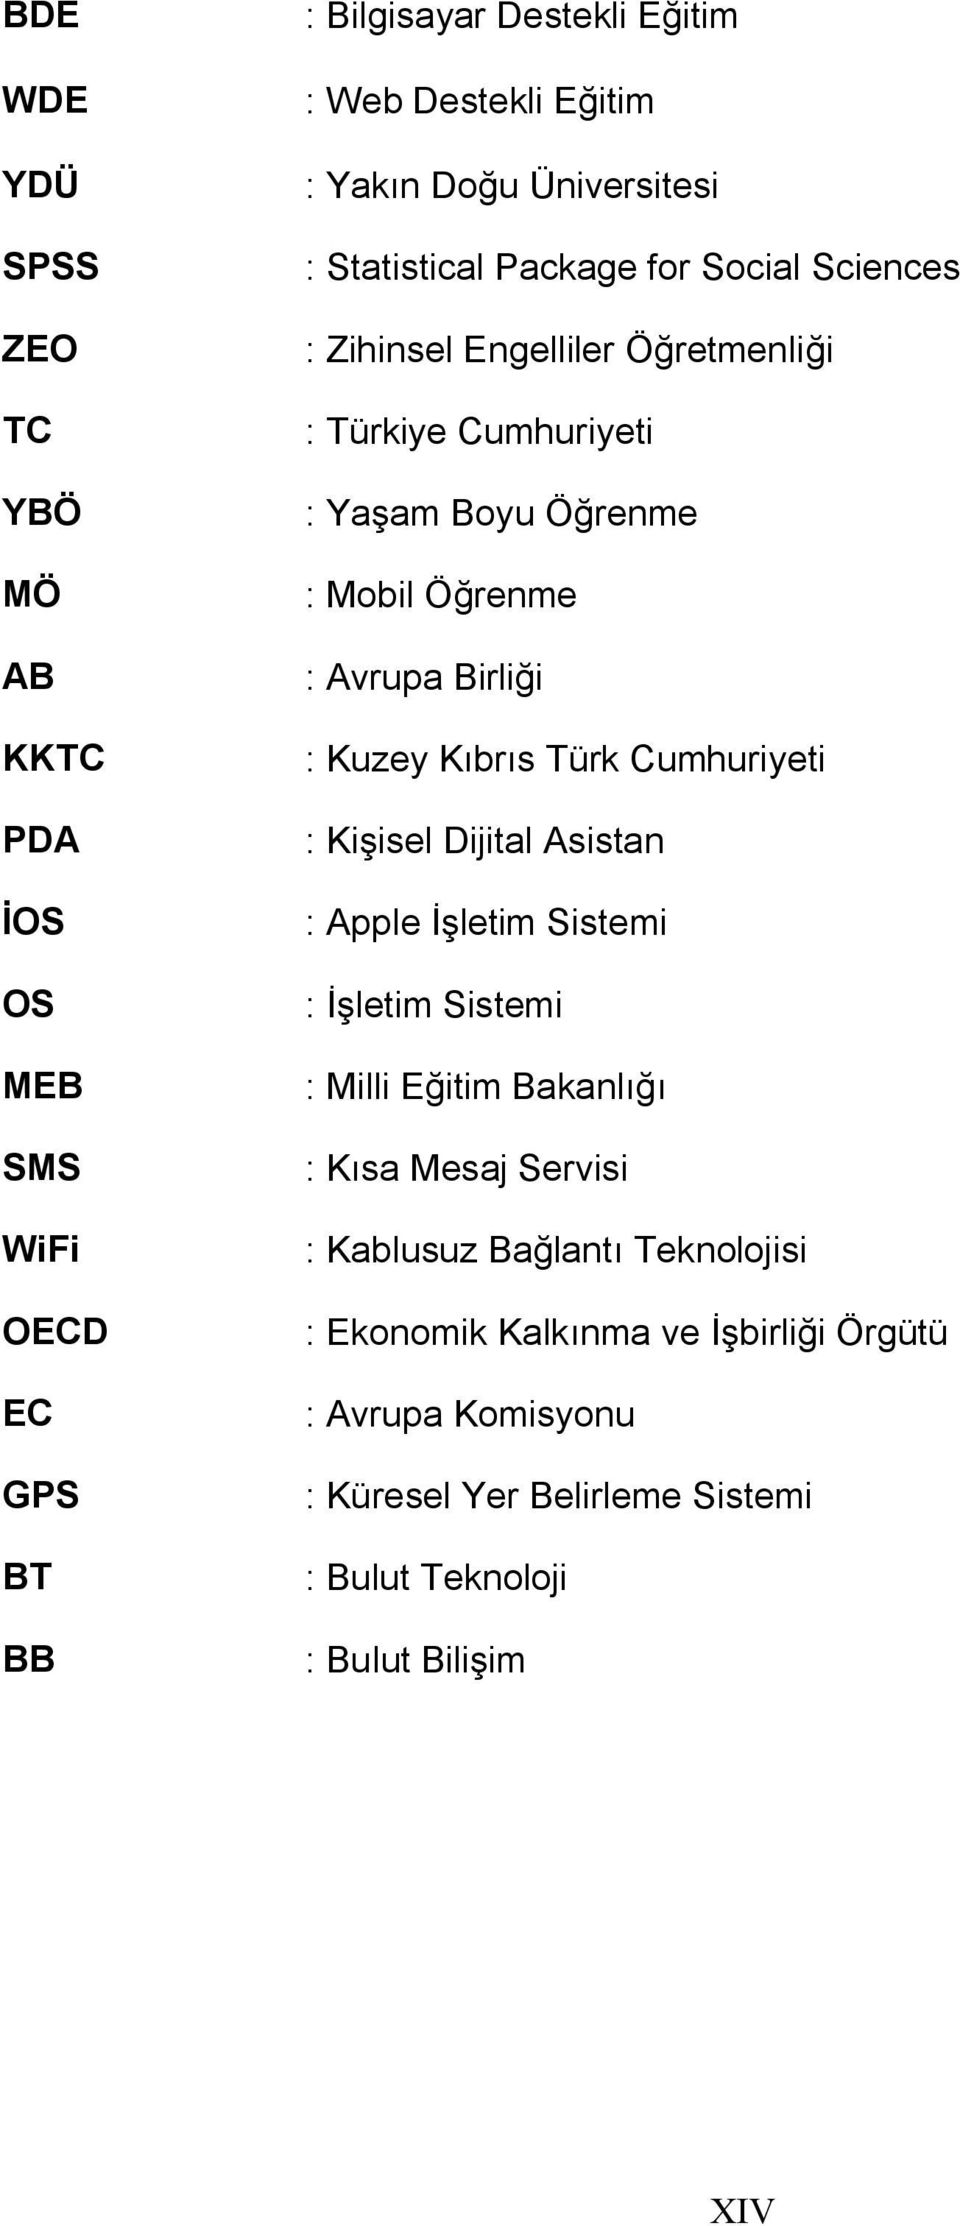 Avrupa Birliği : Kuzey Kıbrıs Türk Cumhuriyeti : Kişisel Dijital Asistan : Apple İşletim Sistemi : İşletim Sistemi : Milli Eğitim Bakanlığı : Kısa Mesaj